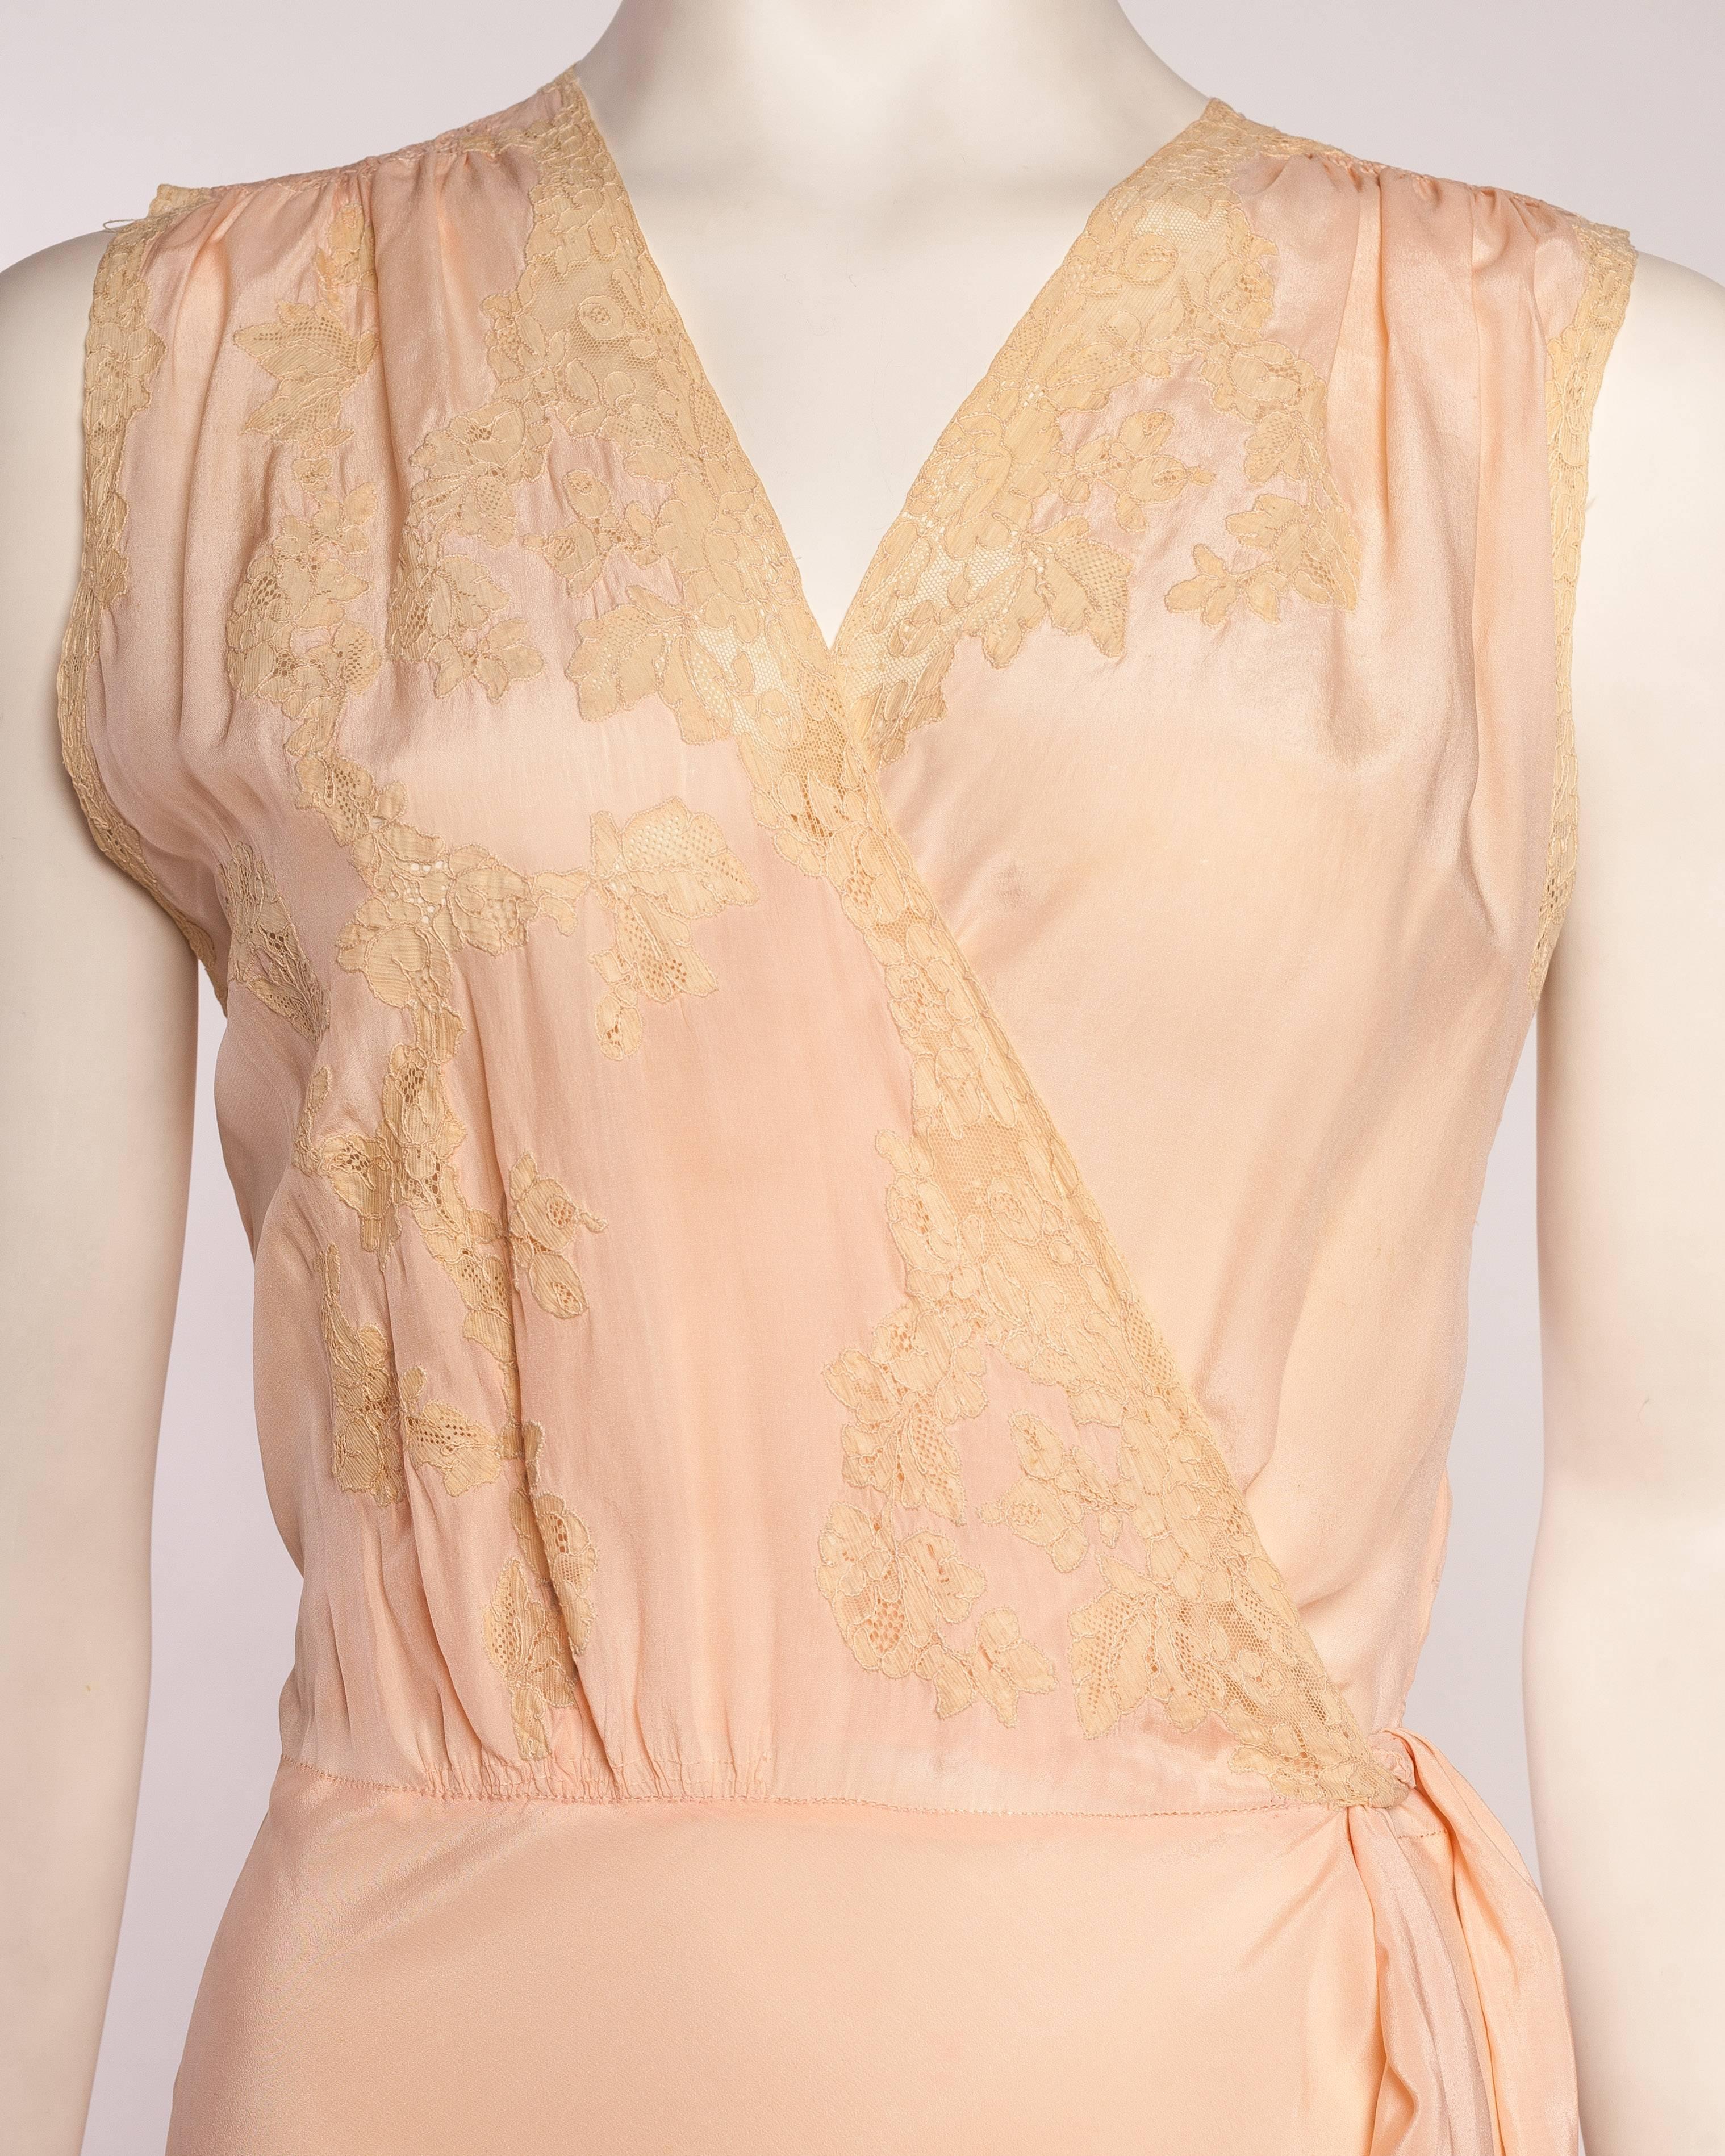 1930 hand lace applique silk lingerie slip 2